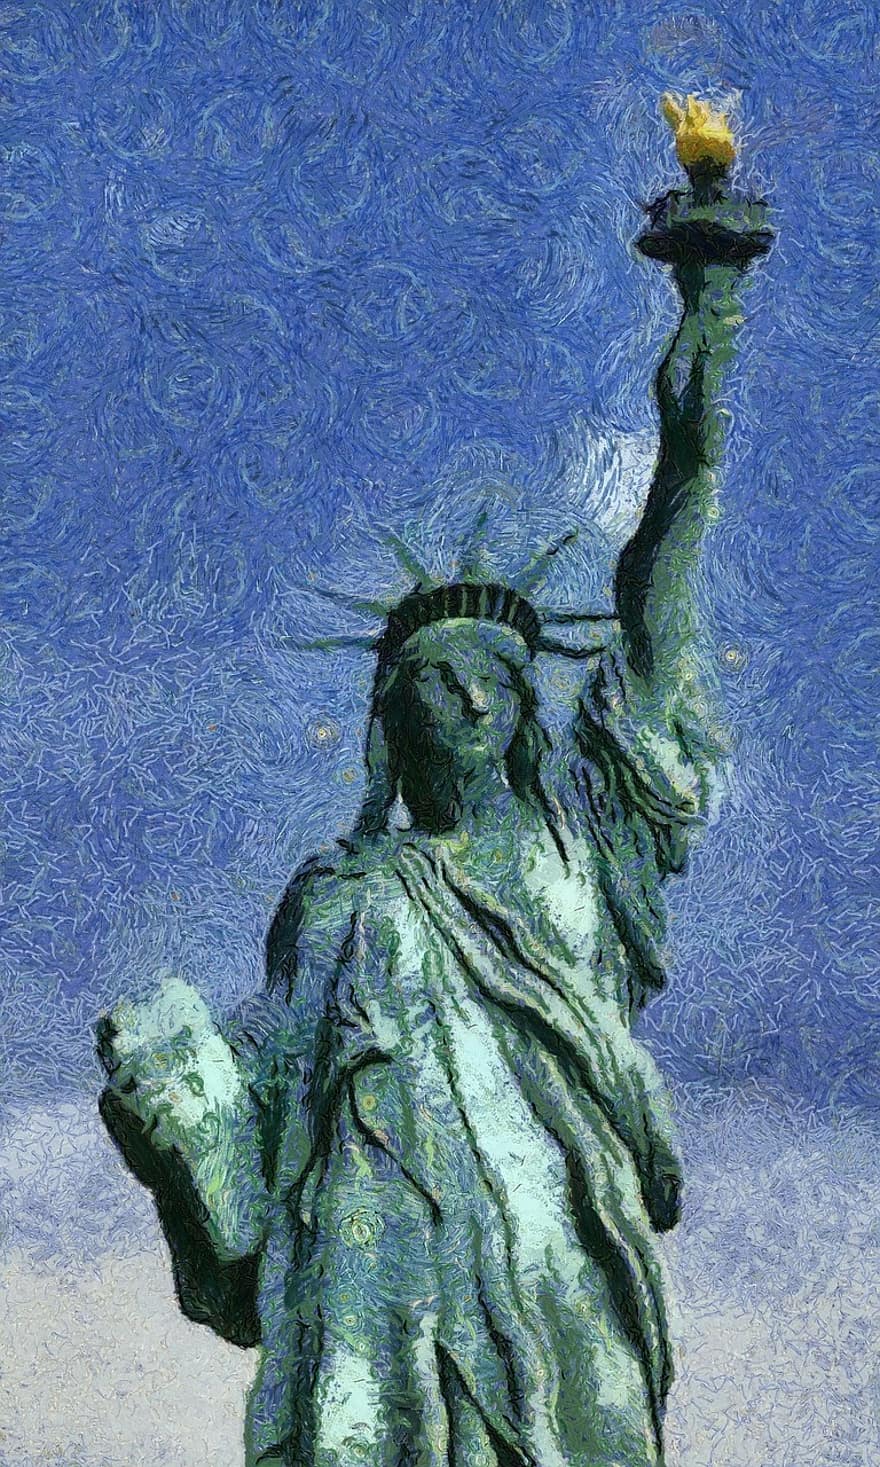 في الهواء الطلق ، في الخارج ، النحت ، دوم ، حرية ، تمثال ، نيويورك ، تمثال الحرية ، شعلة ، هندسة معمارية ، تاريخي